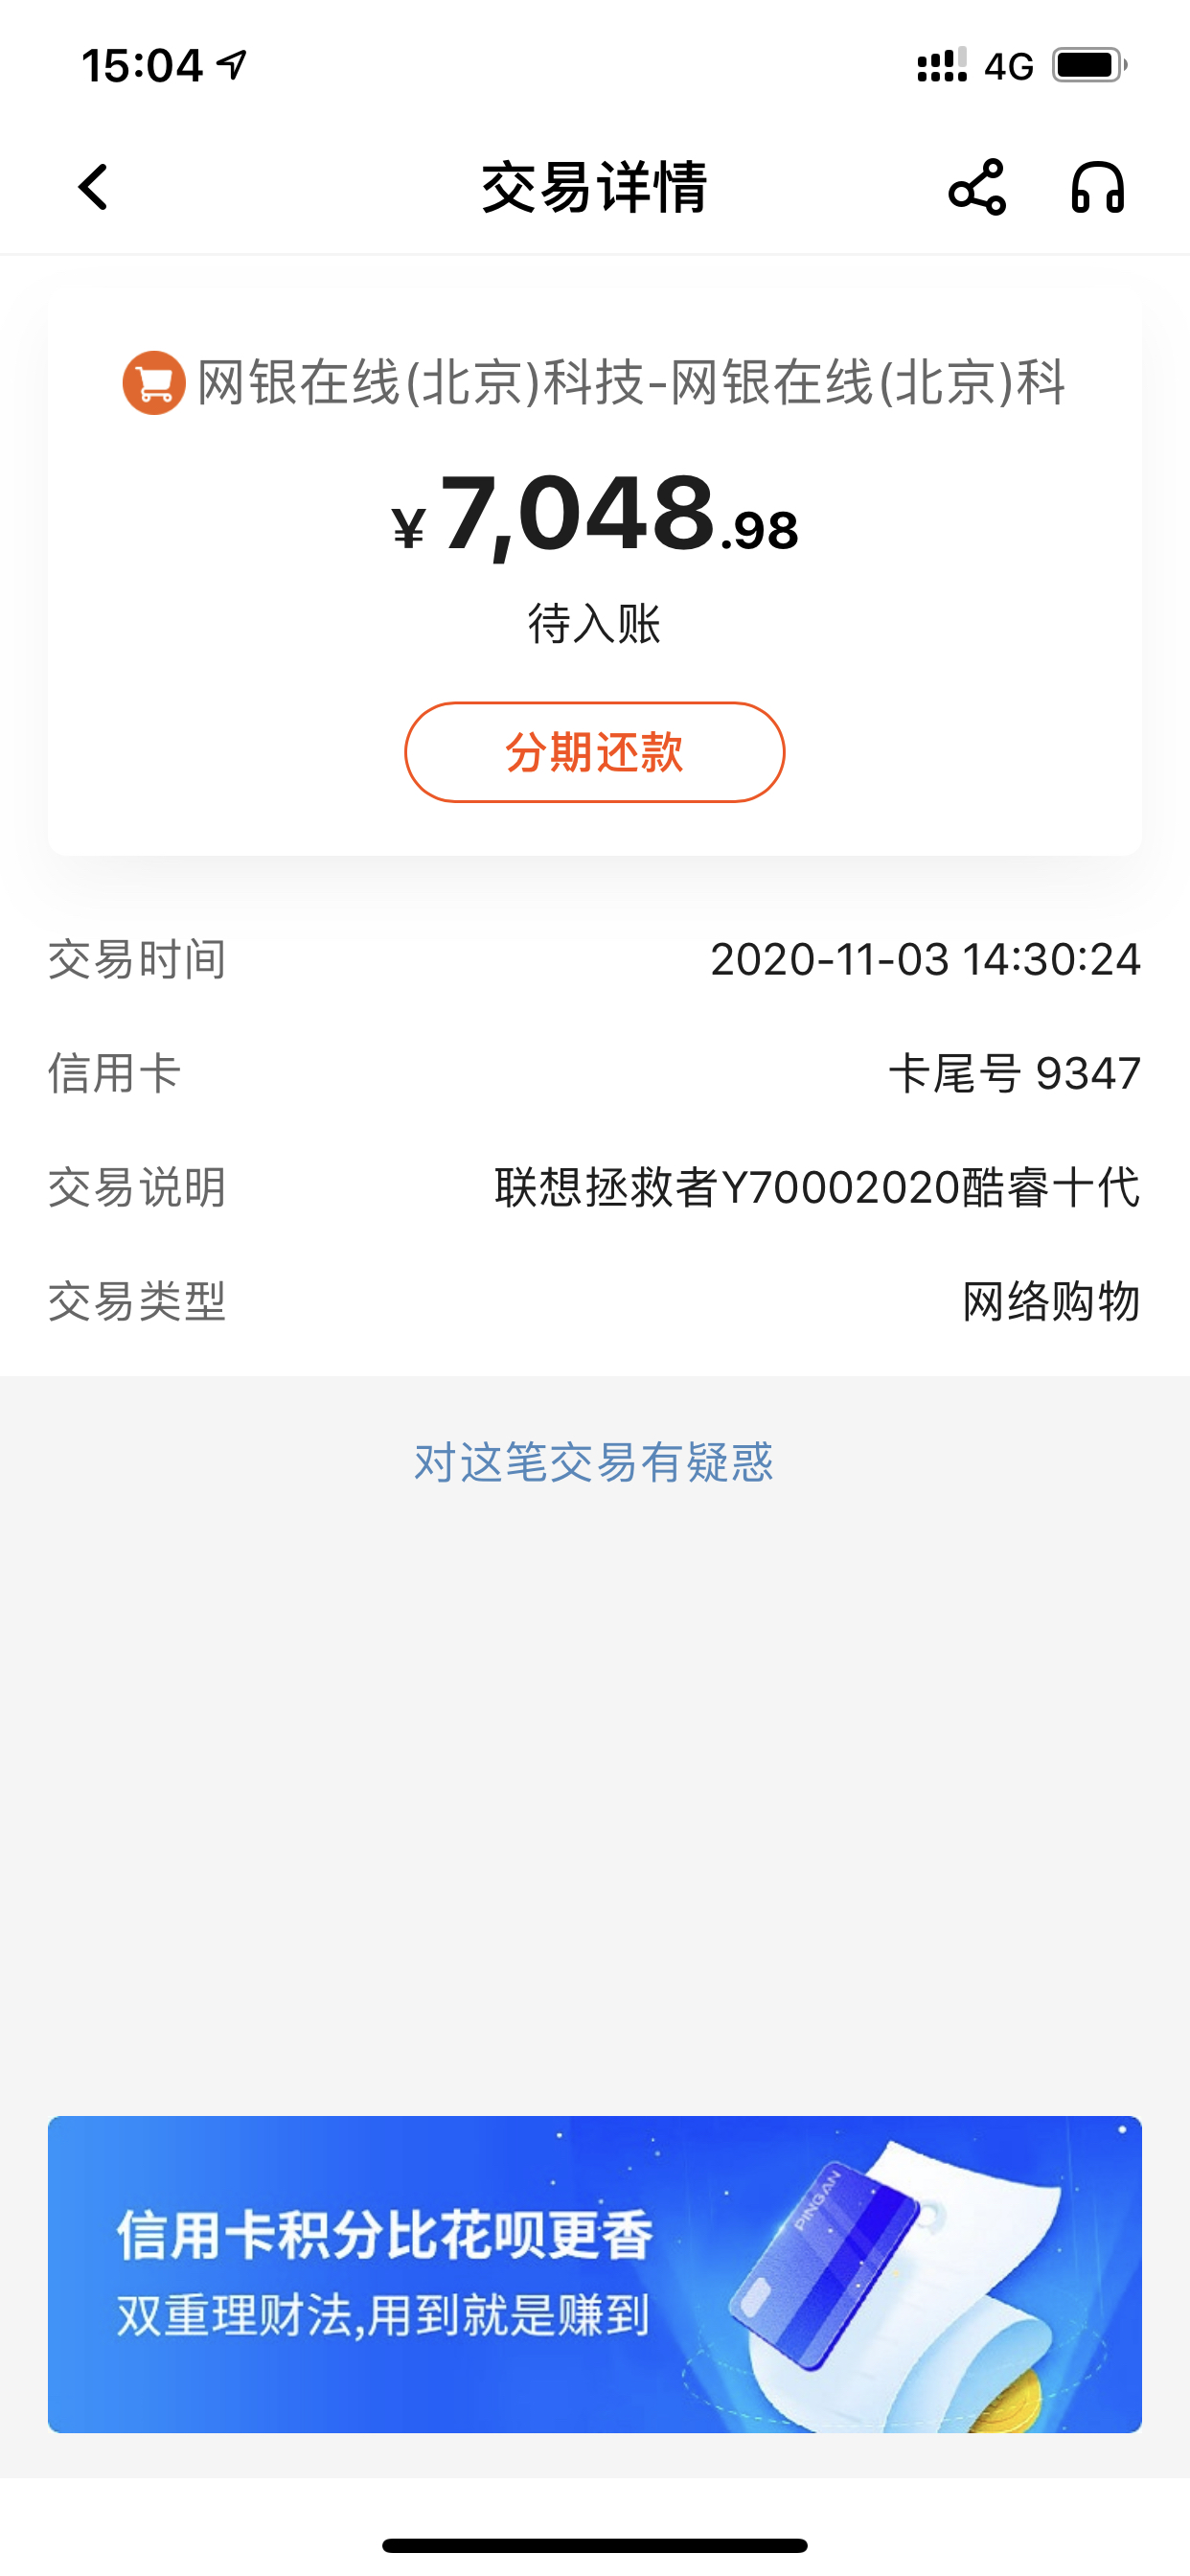 京东直接支付的显示网银在线北京科技